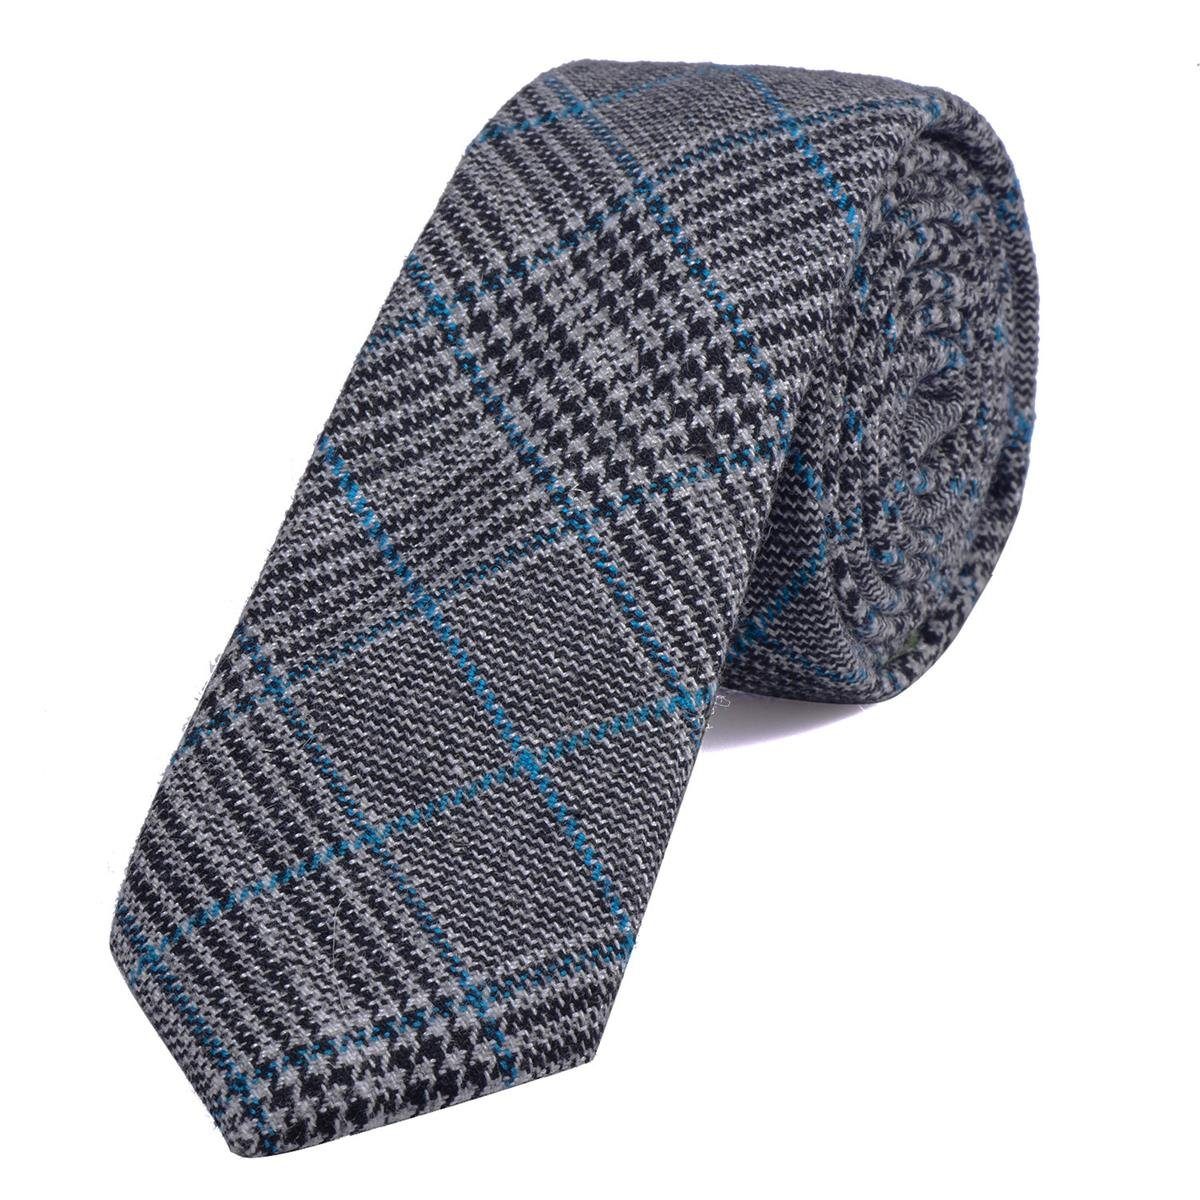 DonDon Krawatte Herren Krawatte 6 cm einfarbig kariert und gepunkt (Packung, 1-St., 1x Krawatte) Baumwolle, verschiedene Muster, für Büro oder festliche Veranstaltungen grau-blau kariert